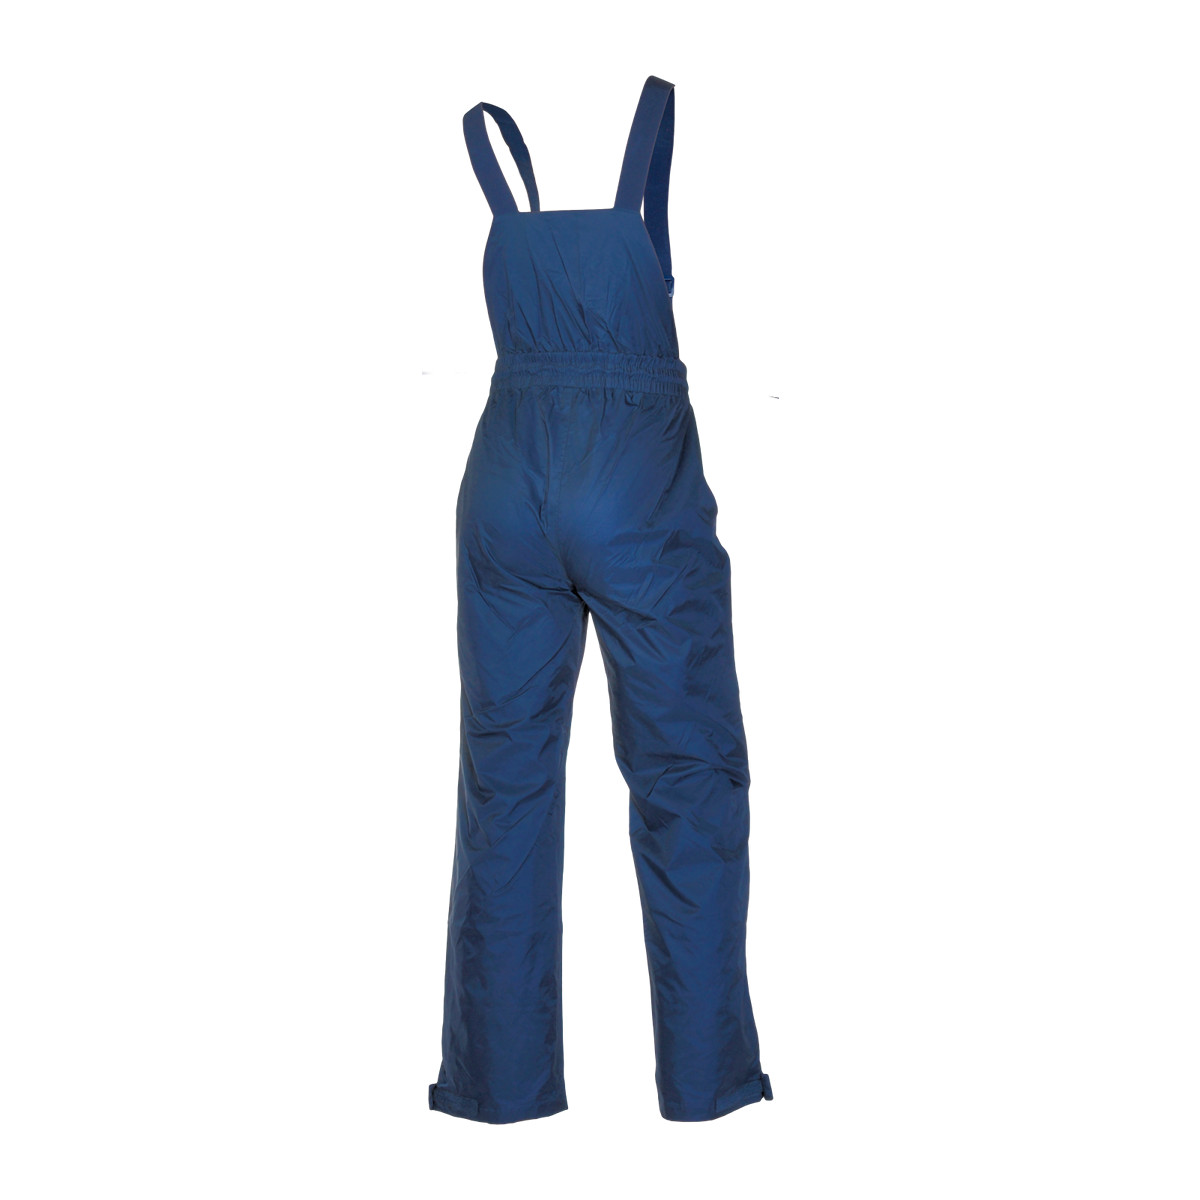 Dry Fashion Baltic Crew pantalon de voile unisexe bleu marine, taille XXXL